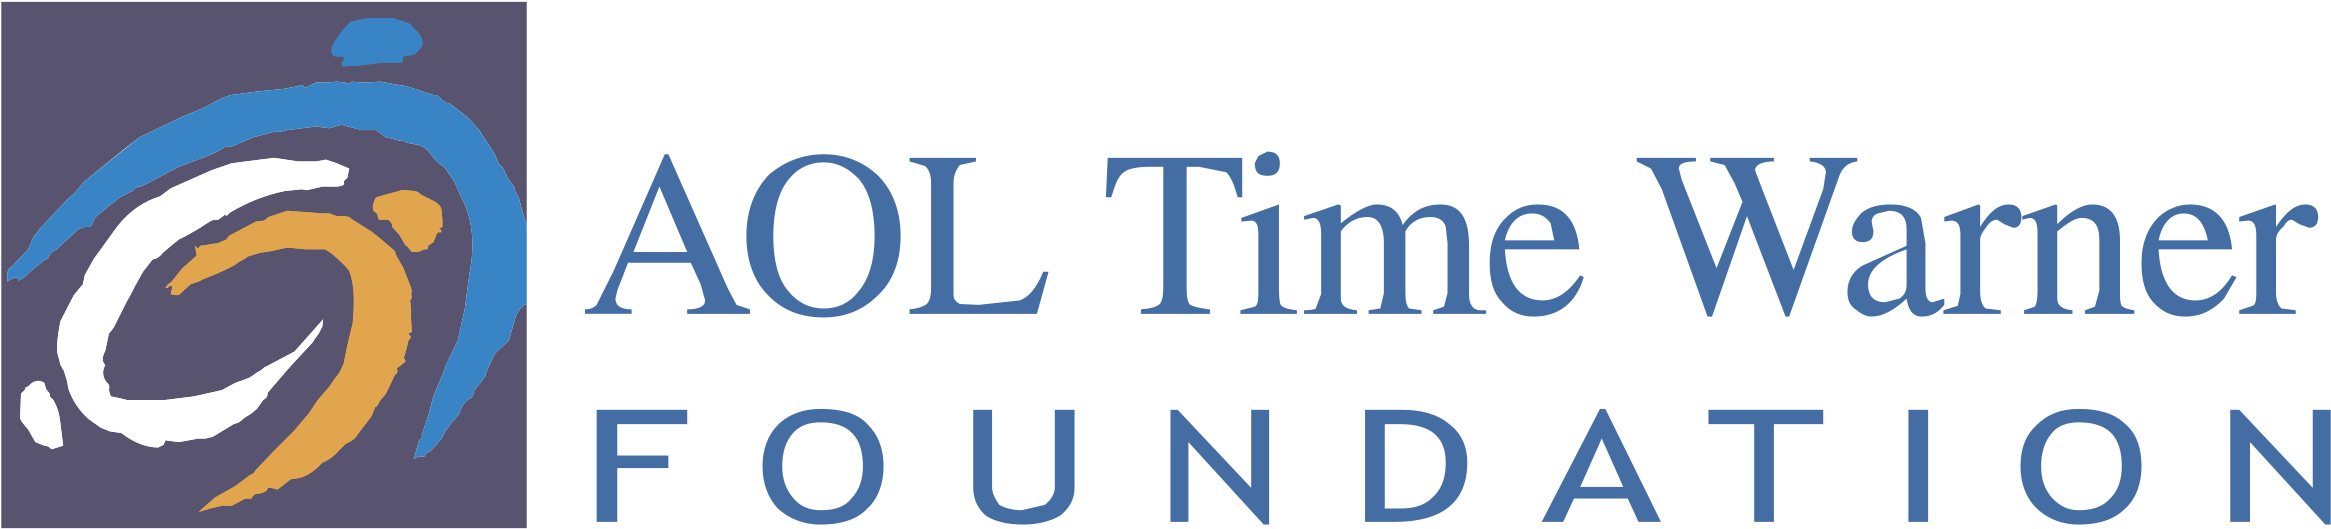 Aol Time Warner Foundation Logo Png Transparent - Aol Time Warner Company Logo Clipart (2400x2400), Png Download